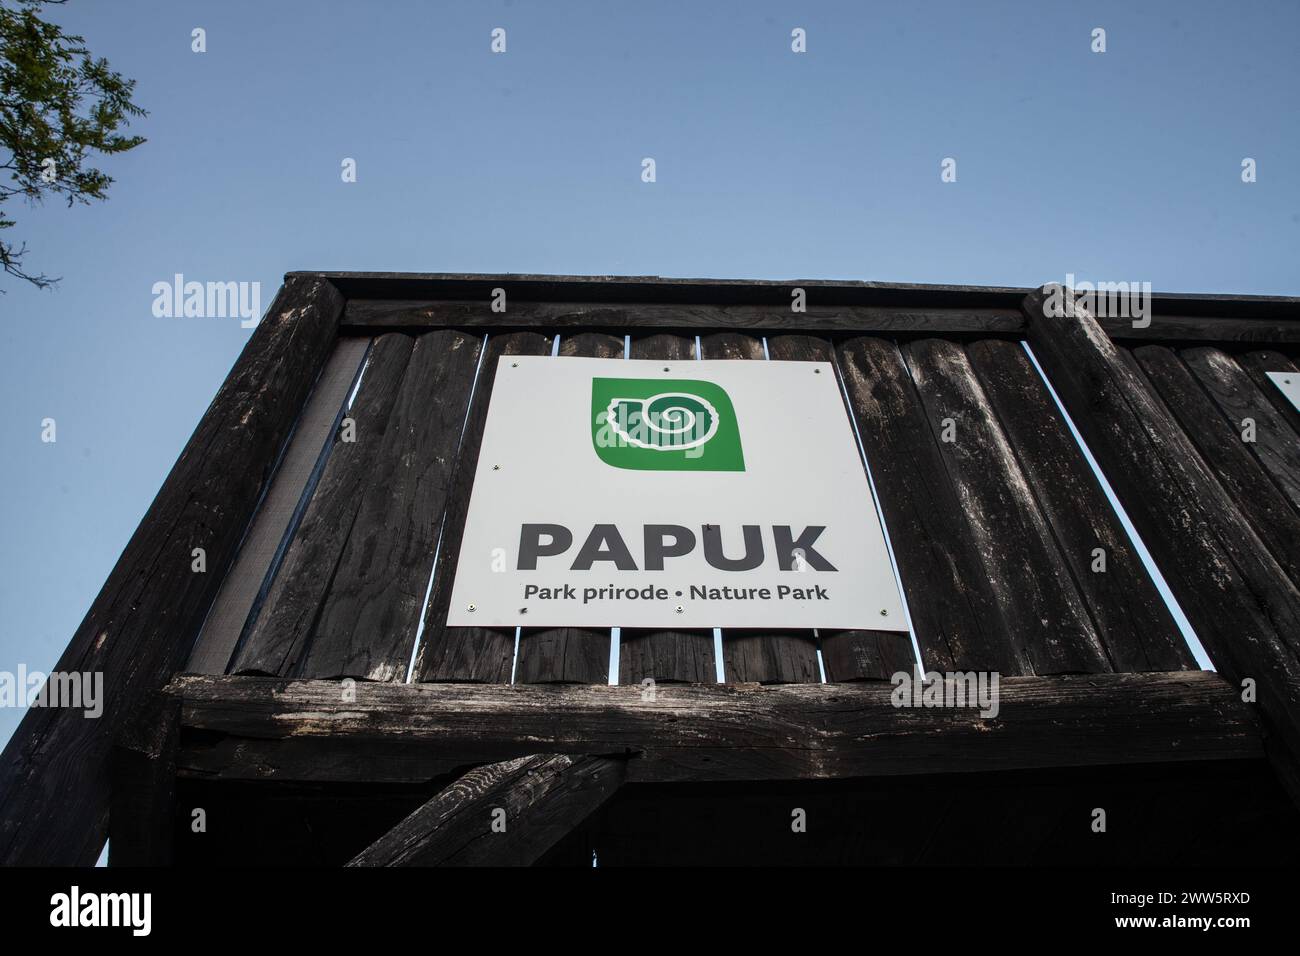 Immagine del logo del parco naturale papuk a Papuk, croazia. Papuk è la montagna più grande della regione della Slavonia, nella Croazia orientale, vicino alla città di Požega. Foto Stock